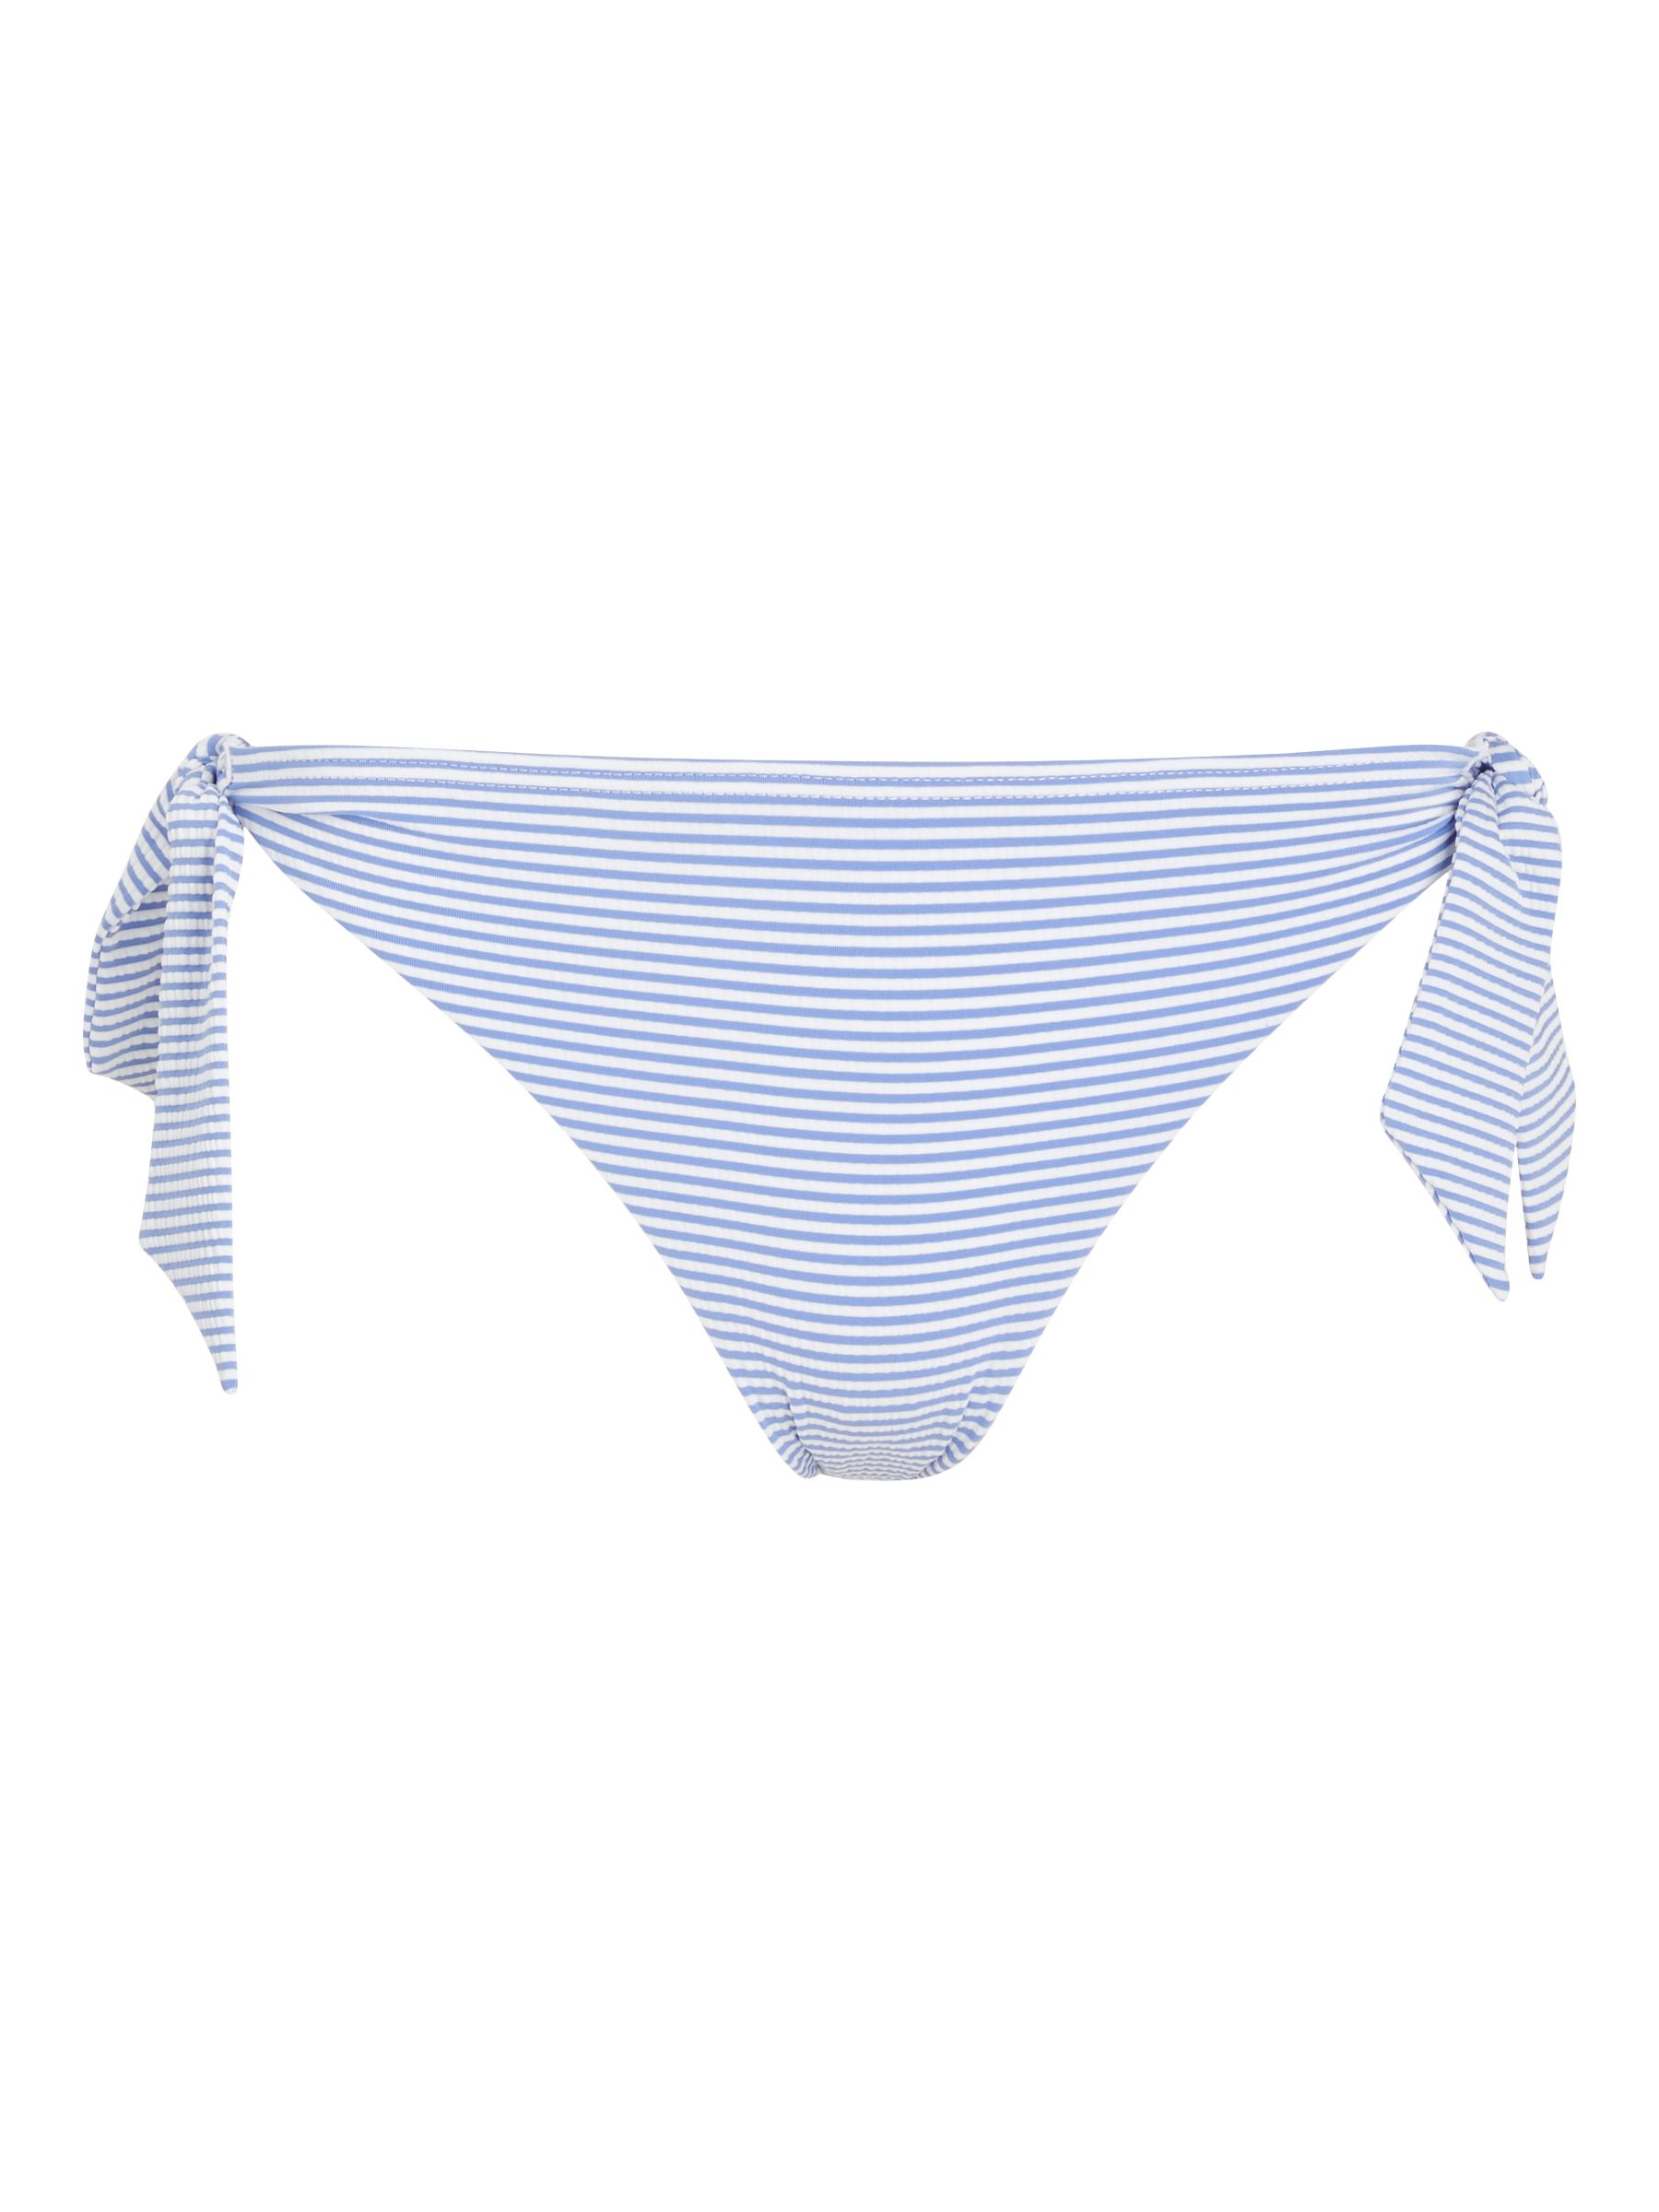 John Lewis St Tropez Seersucker Stripe Bunny Tie Side Bikini Briefs, Blue, 8